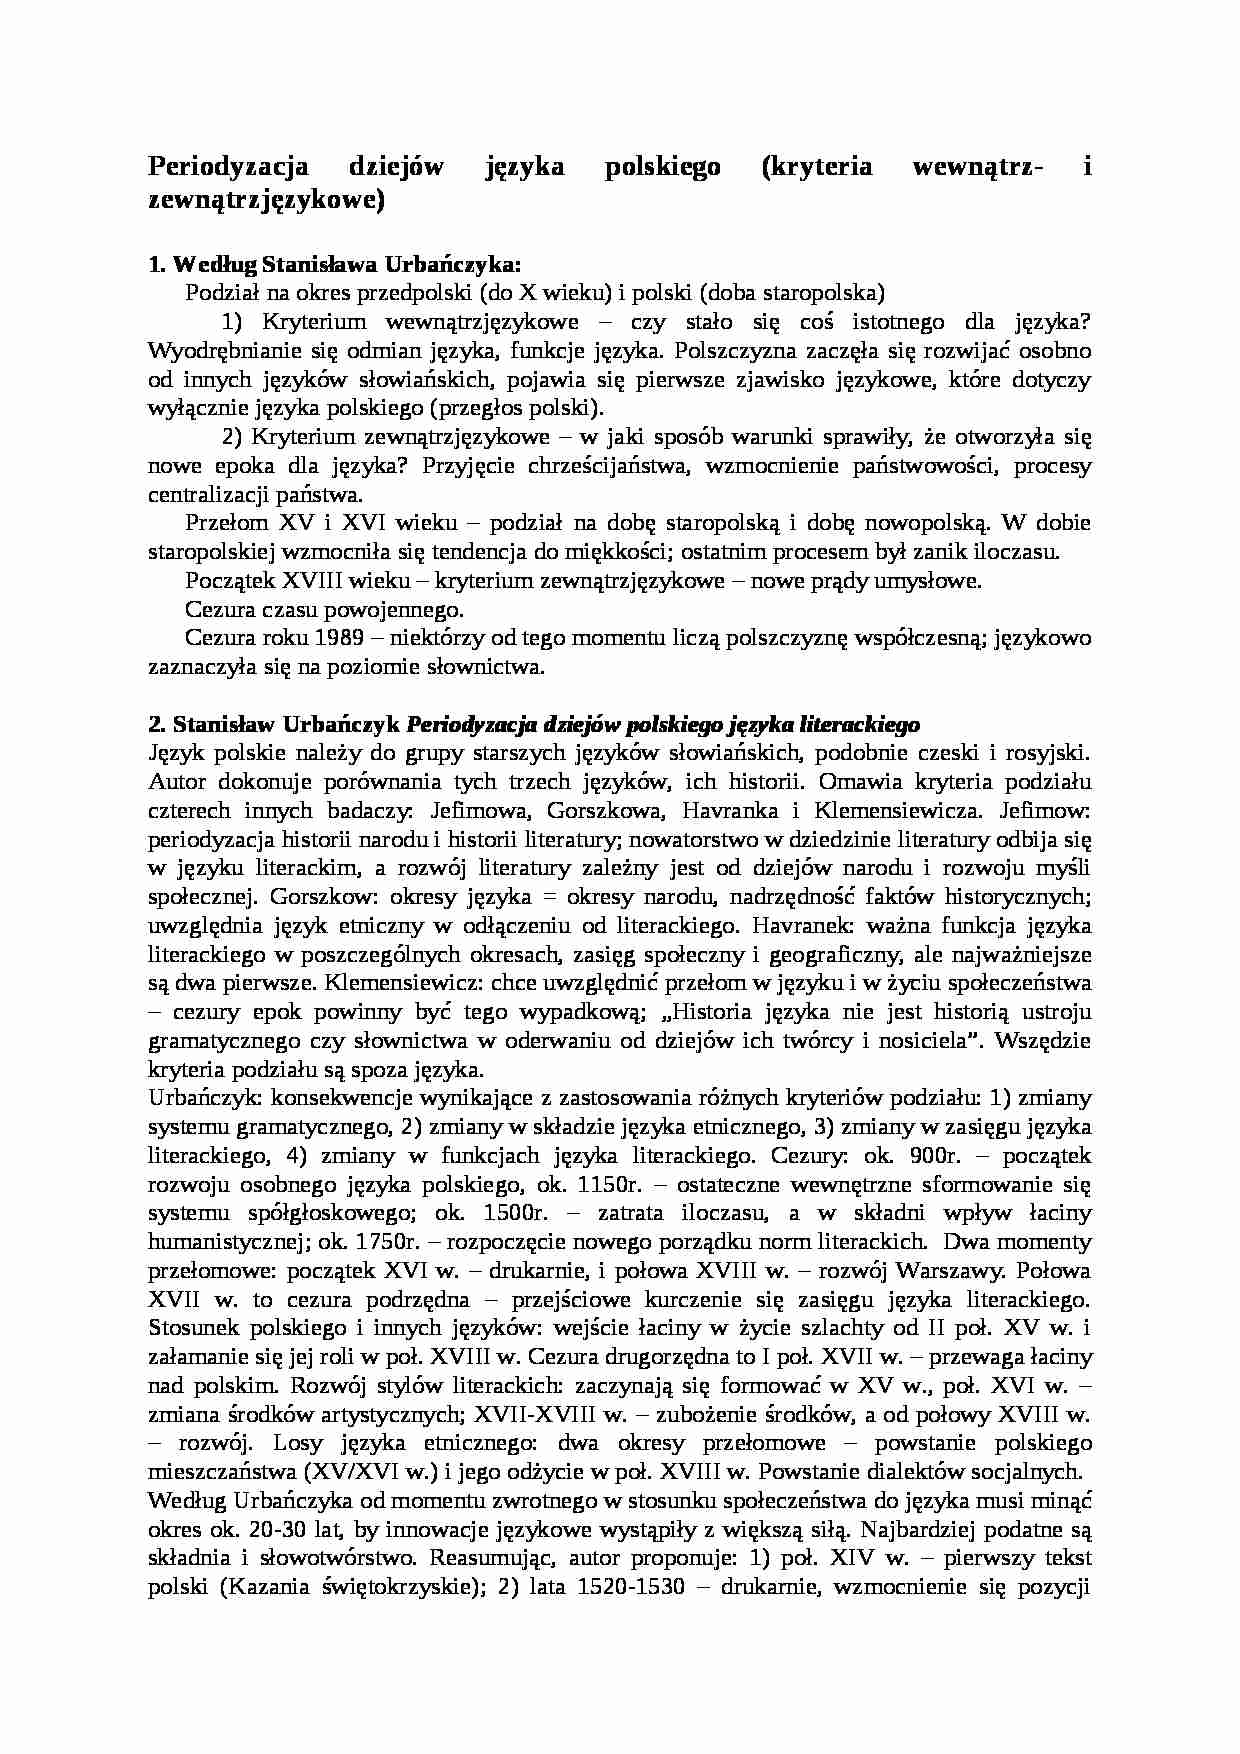 Periodyzacja dziejów języka polskiego-opracowanie - strona 1